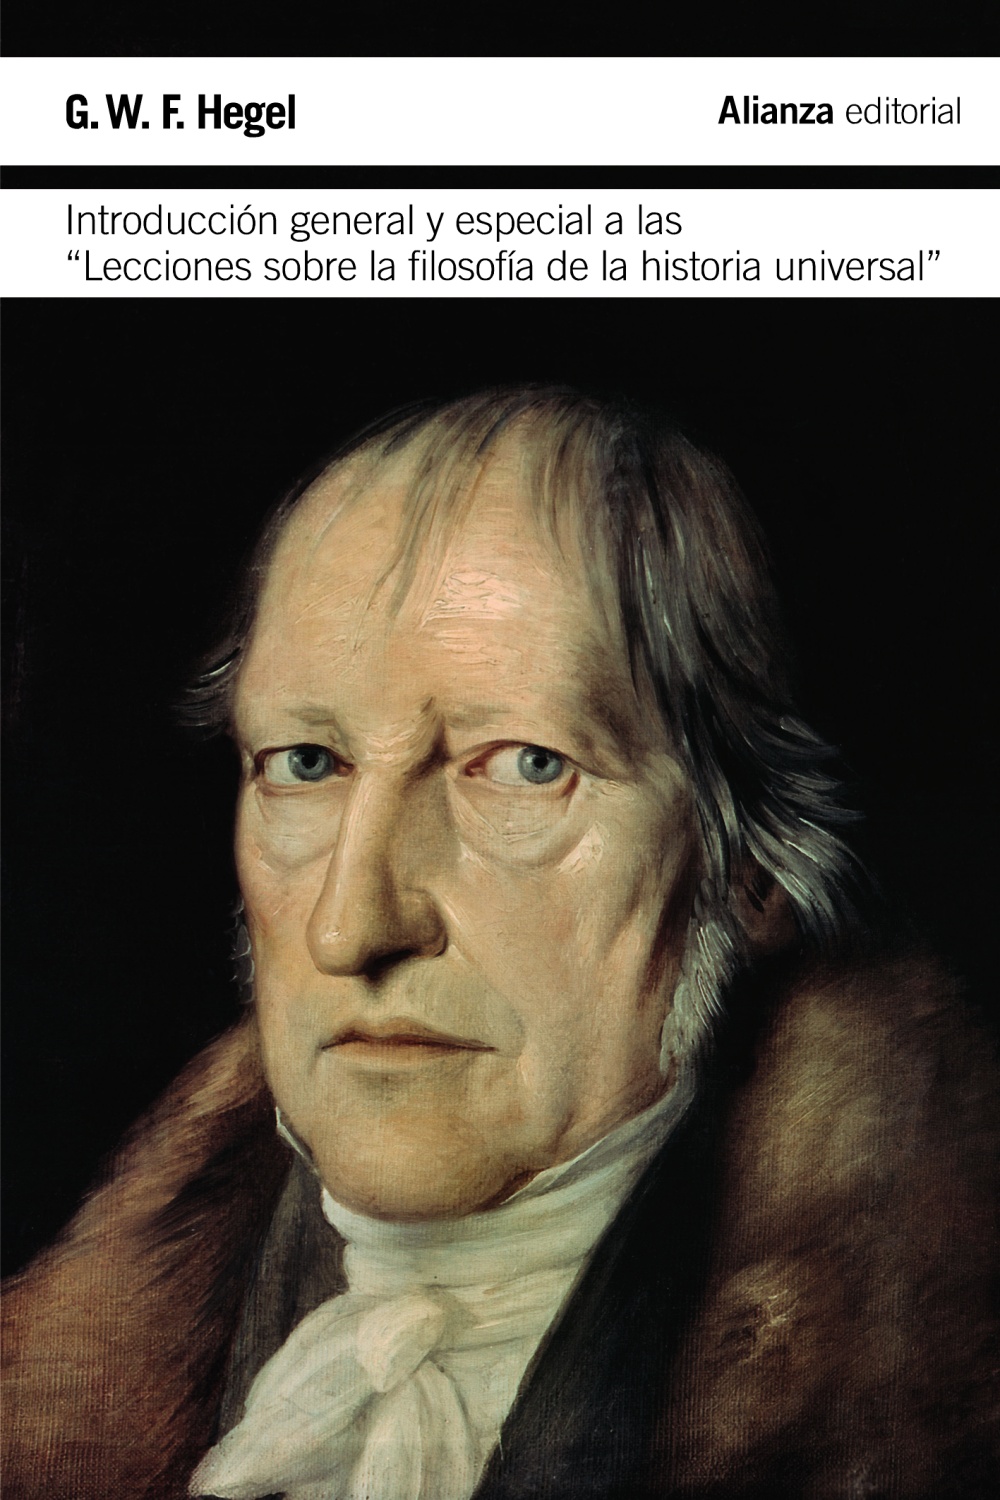 G. W. F. Hegel (1770-1831) es una de las figuras más destacadas e influyentes del idealismo alemán, corriente filosófica que se desarrolló a partir de las indagaciones kantianas sobre las posibilidades y límites del conocimiento humano. El presente volumen recoge las dos "Introducciones" que anteceden a las ediciones convencionales de las "Lecciones sobre la filosofía de la historia universal" que Hegel impartió en la Universidad de Berlín durante la última etapa de su vida. La "Introducción general" proporciona el marco básico para la interpretación hegeliana de la historia, a saber: la historia universal como proceso de despliegue del espíritu y la filosofía de la historia como instrumento que permite entender y mostrar la continuidad de ese desenvolvimiento. La "Introducción especial" complementa la anterior y articula un díptico fundamental para la comprensión cabal del pensamiento de Hegel.